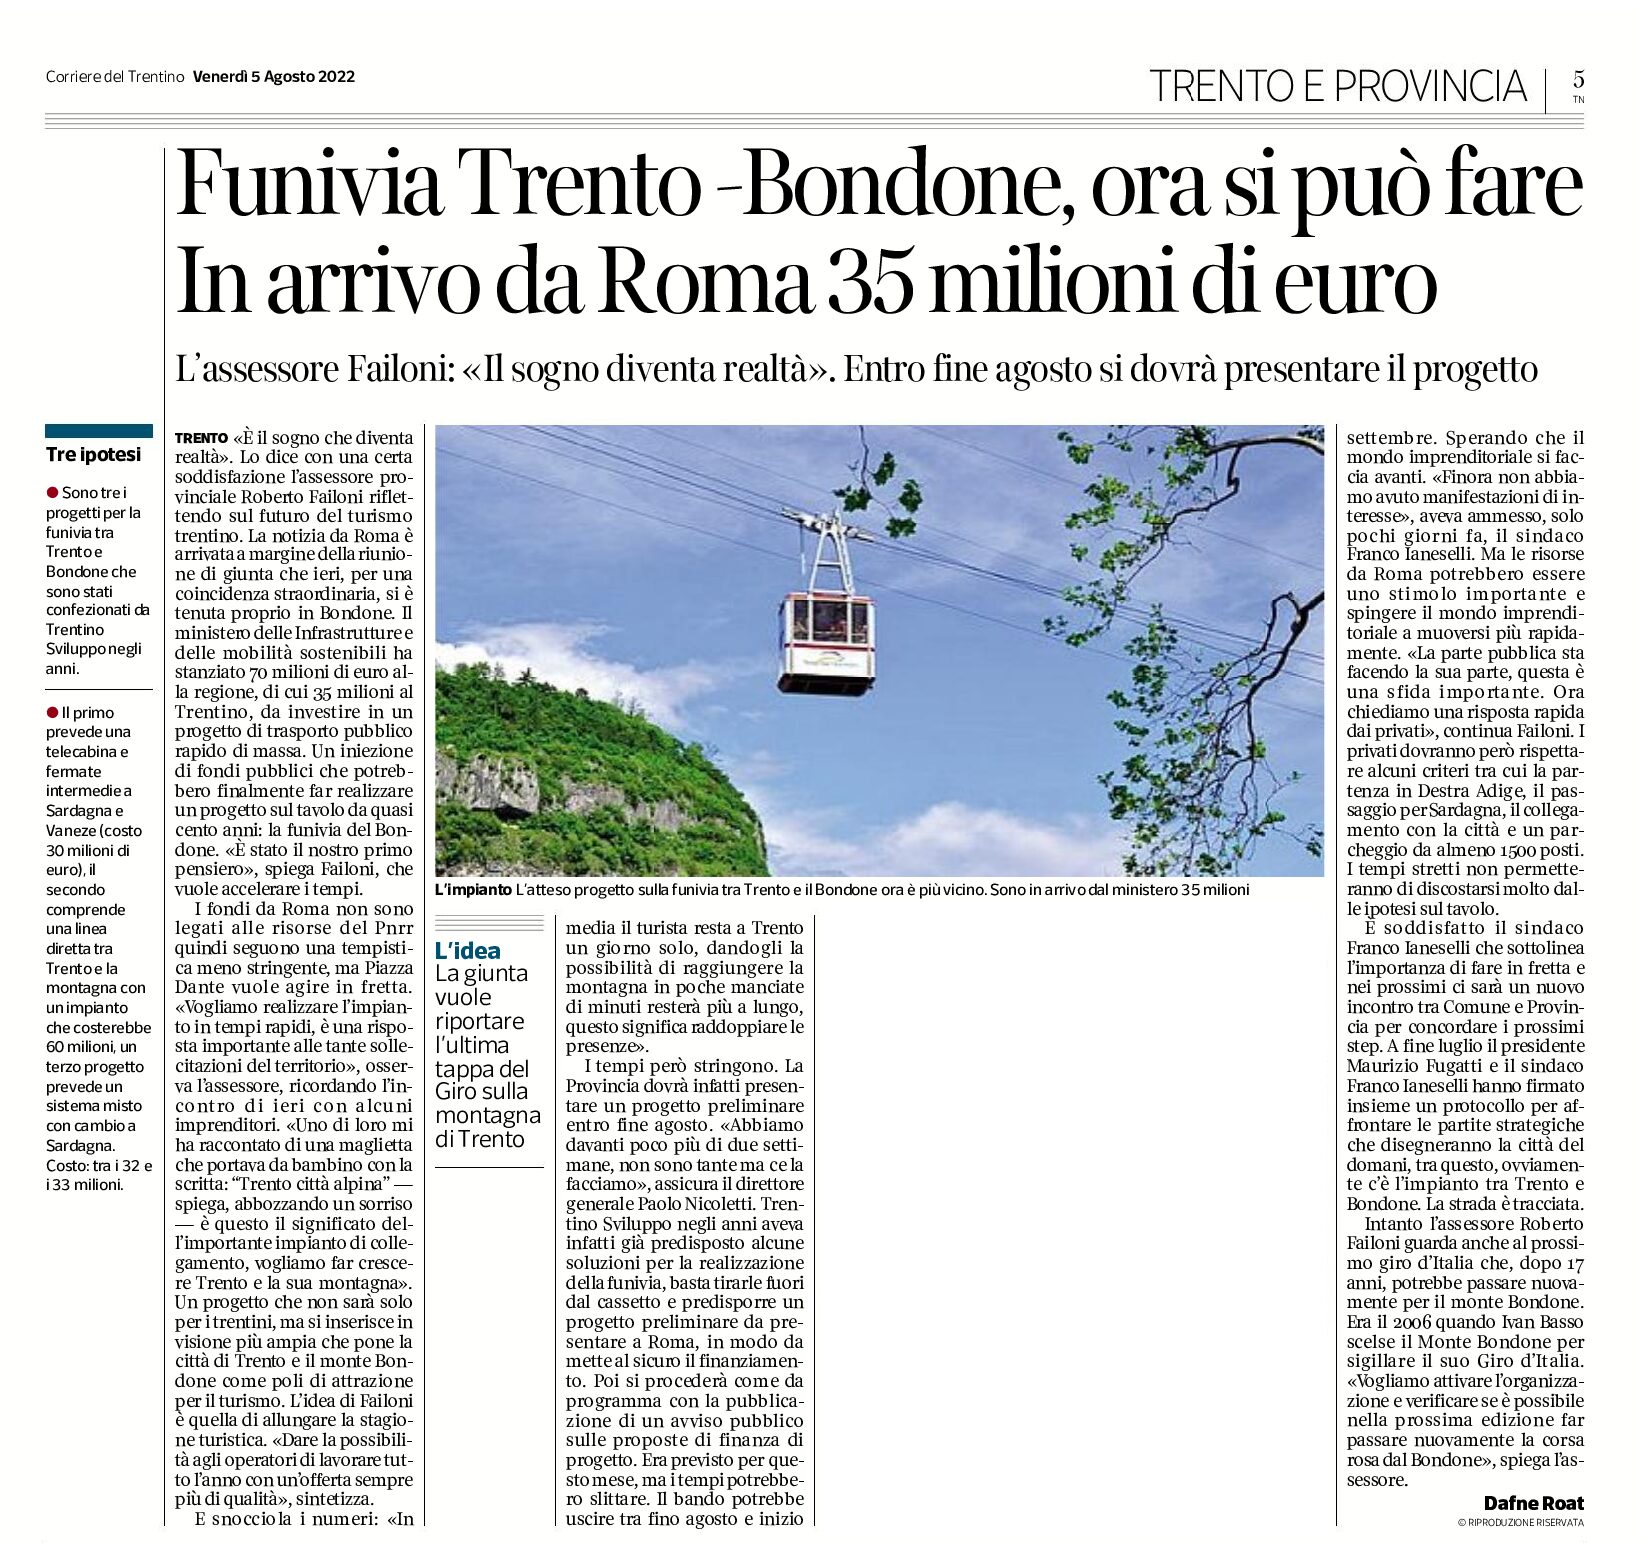 Funivia Trento-Bondone: ora si può fare, da Roma 35 milioni di euro